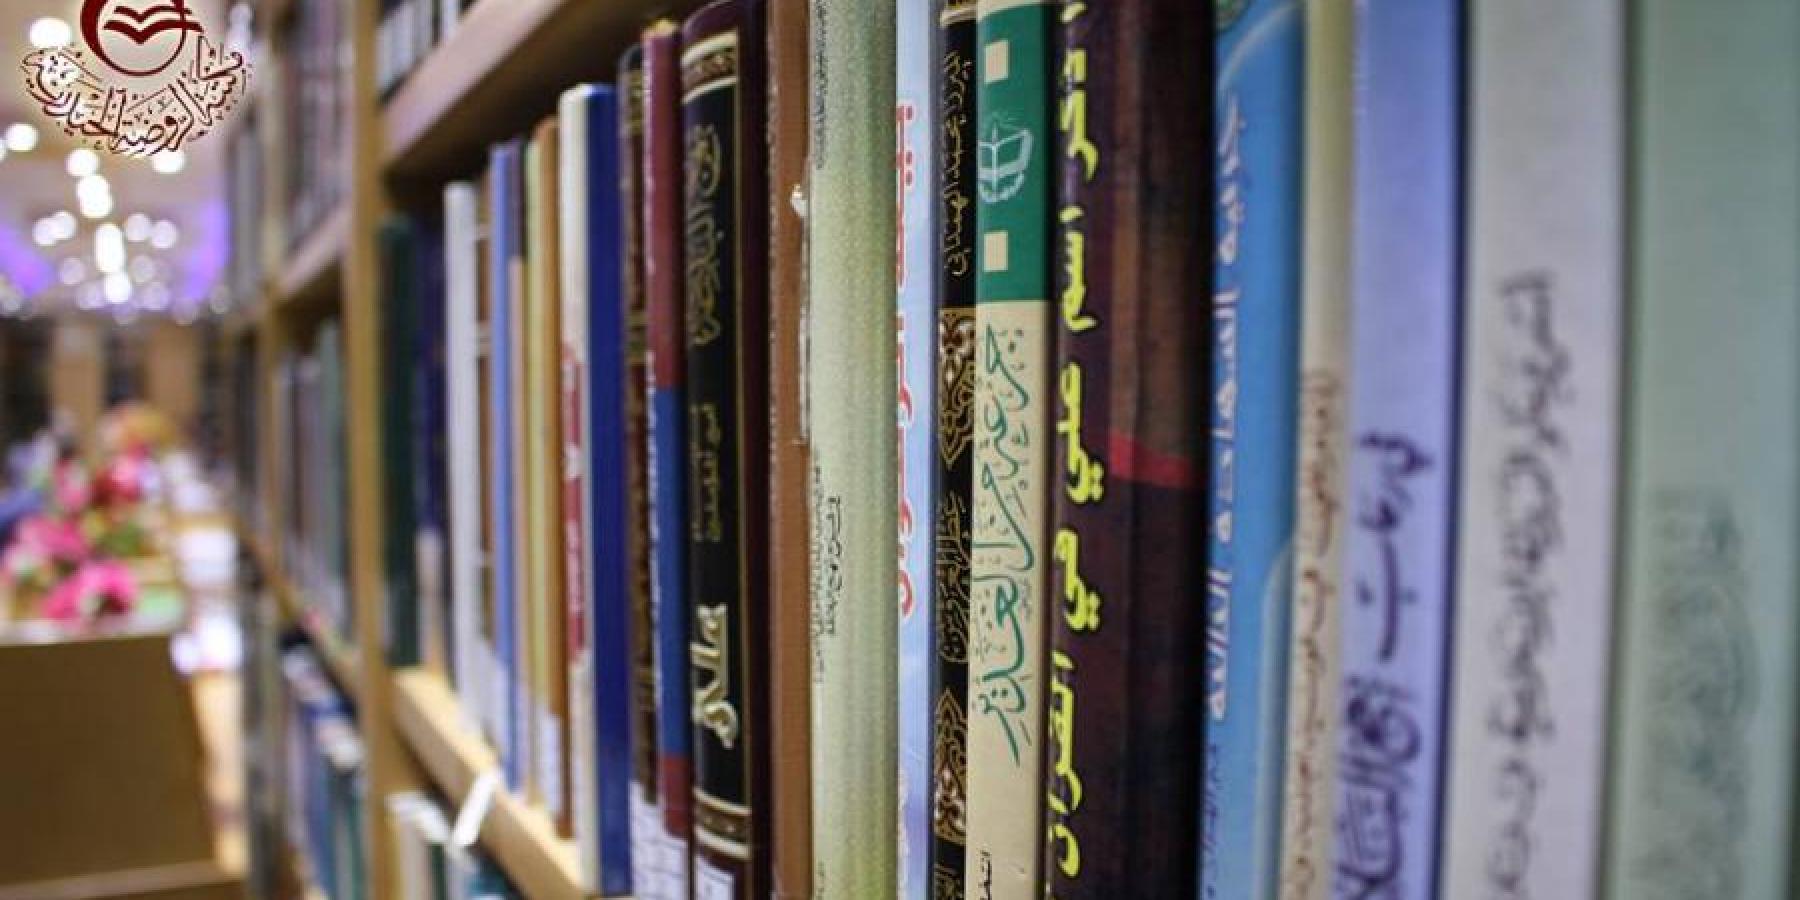 مكتبة الروضة الحيدرية ... إنجازات واعدة في توفير المصادر الإسلامية والعلمية